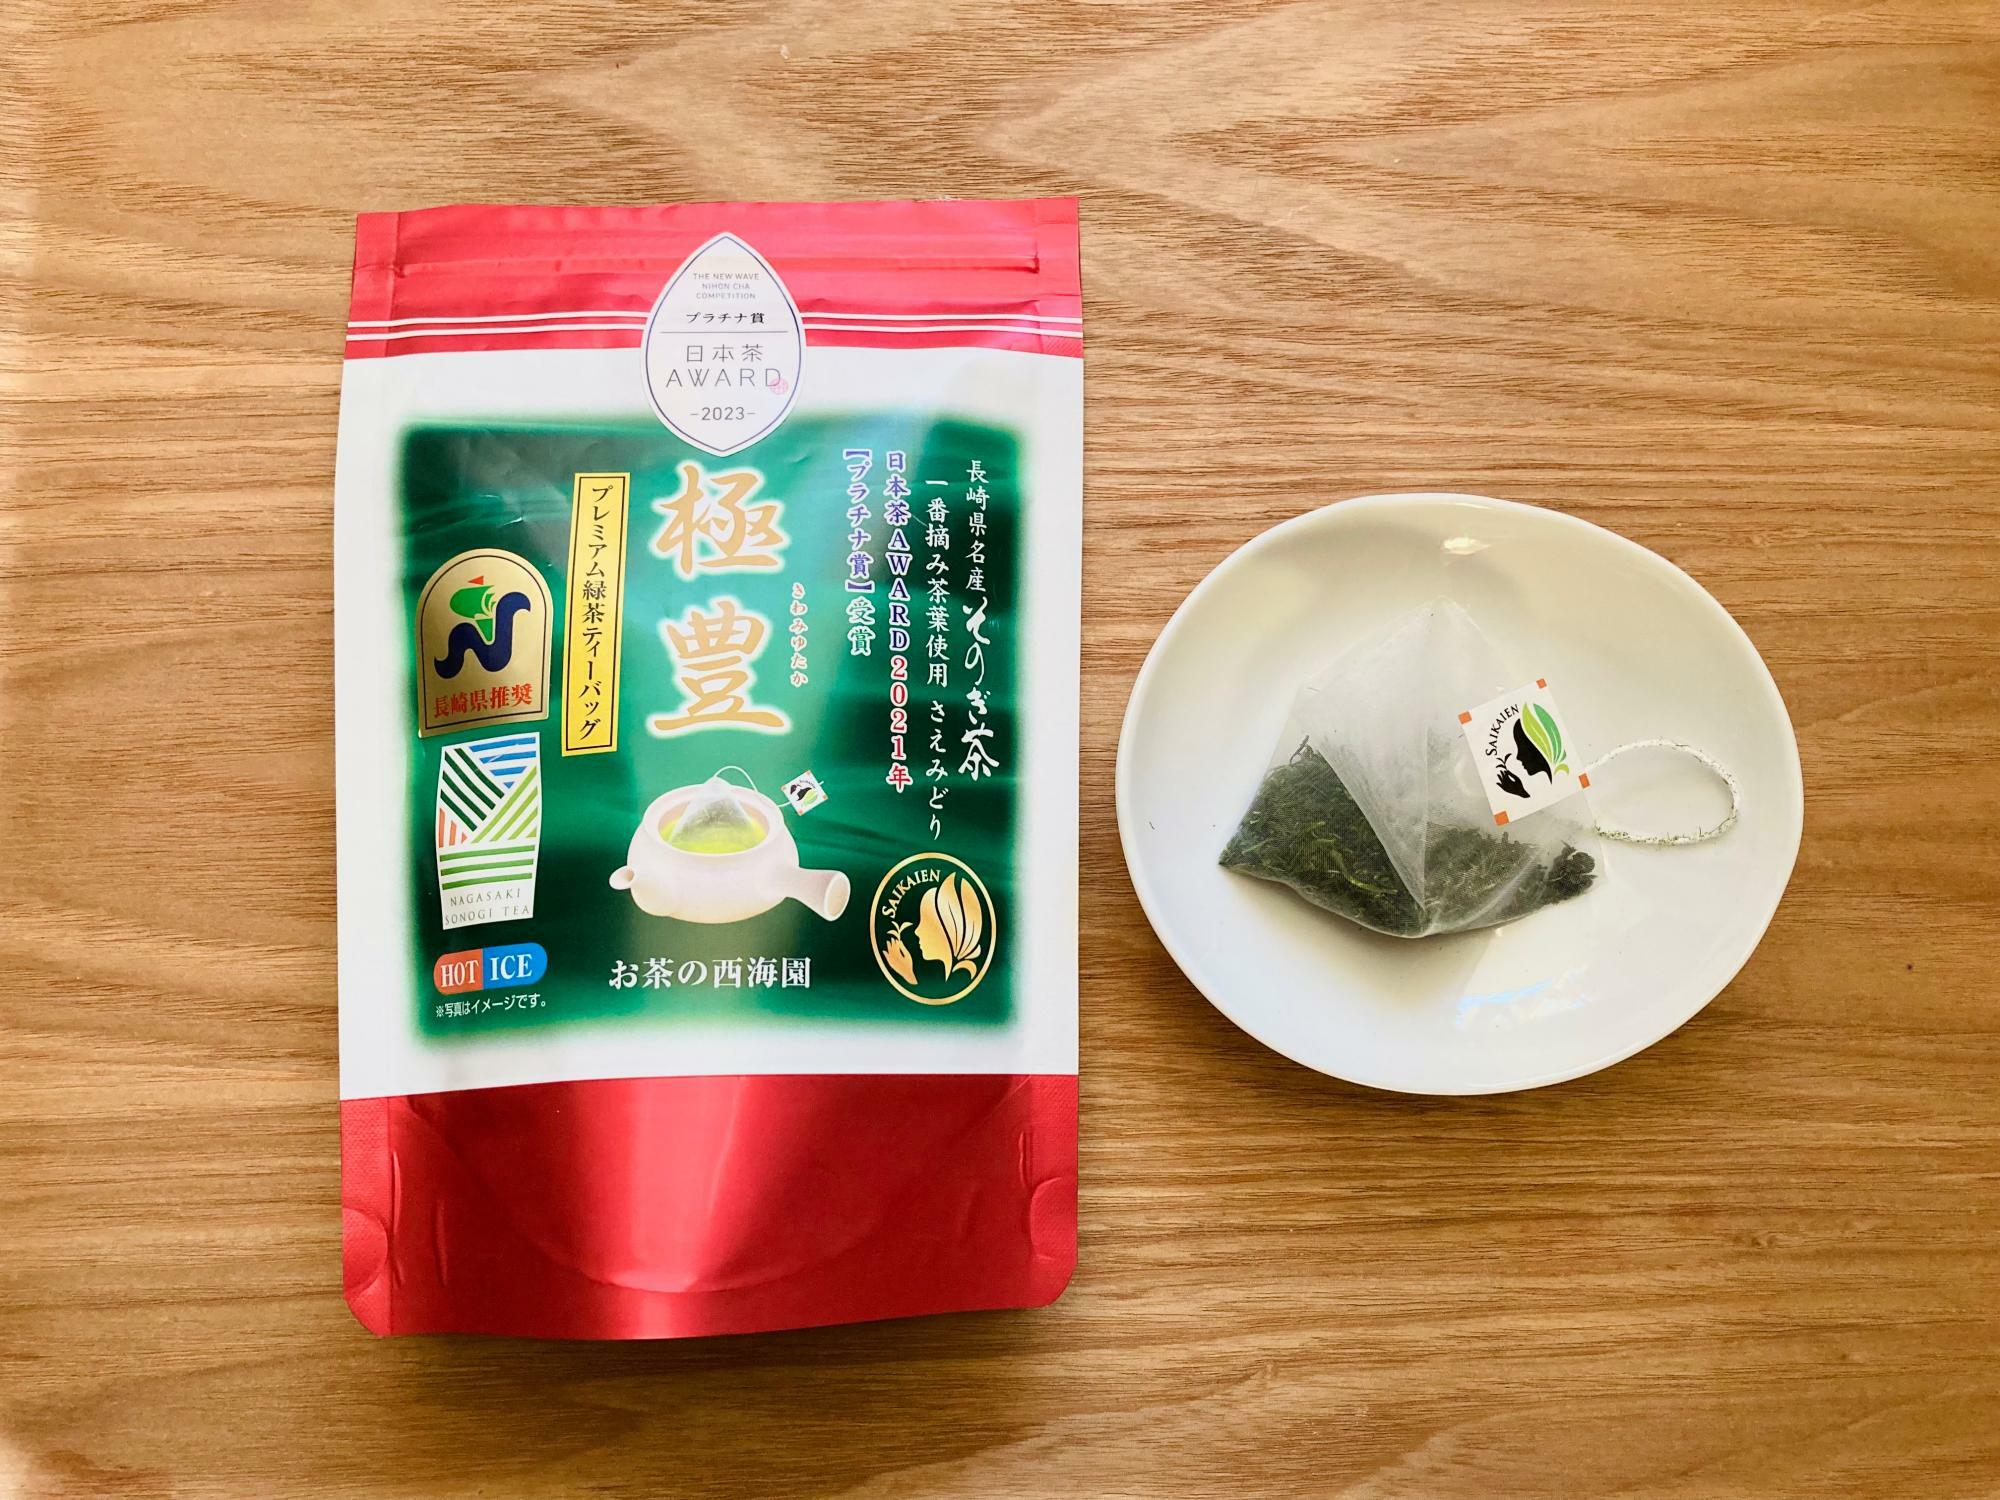 日本茶準大賞の西海園の「極豊プレミアム緑茶ティーバッグ」。テトラ型ティーバッグに贅沢にも6グラムの茶葉が入っている